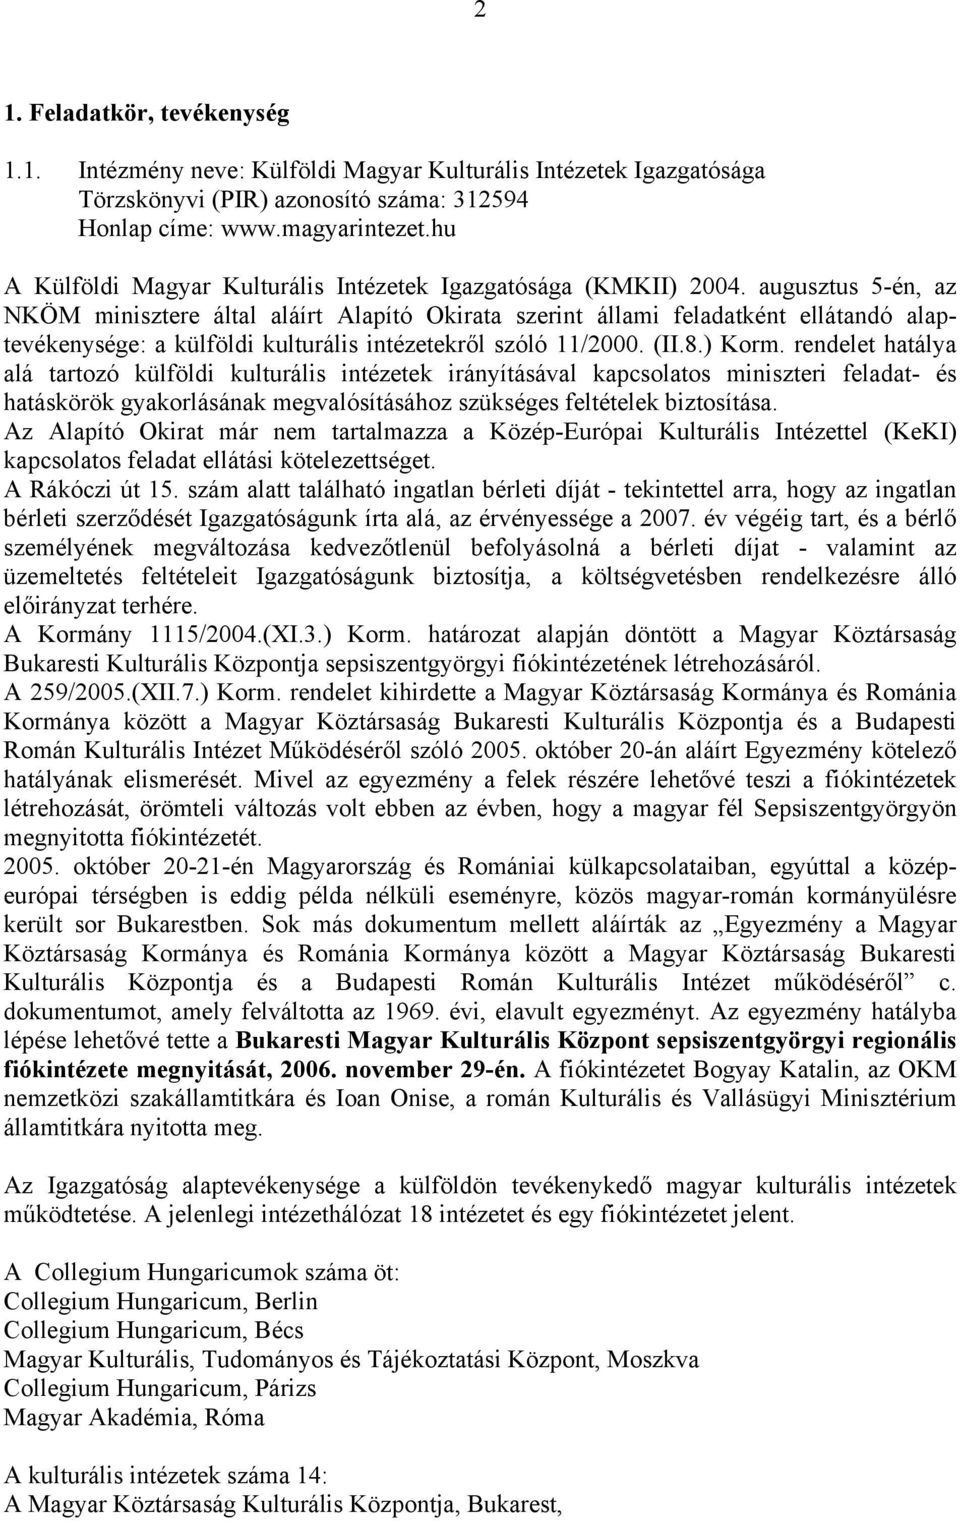 augusztus 5-én, az NKÖM minisztere által aláírt Alapító Okirata szerint állami feladatként ellátandó alaptevékenysége: a külföldi kulturális intézetekről szóló 11/2000. (II.8.) Korm.